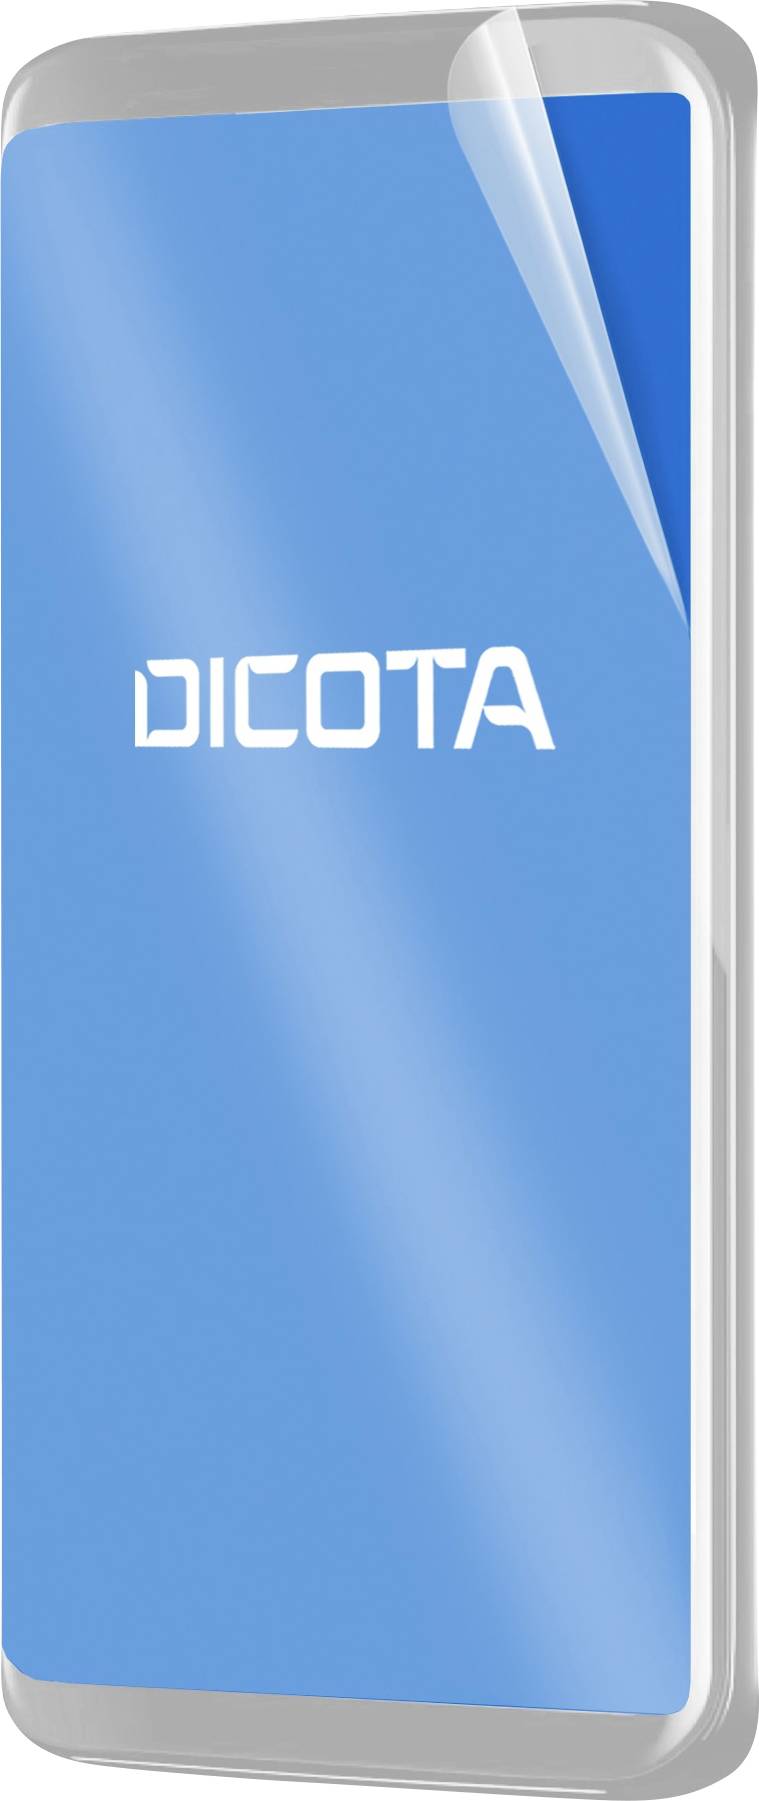 DICOTA Antimikrobieller Filter für iPhone 12 MINI selbstklebend